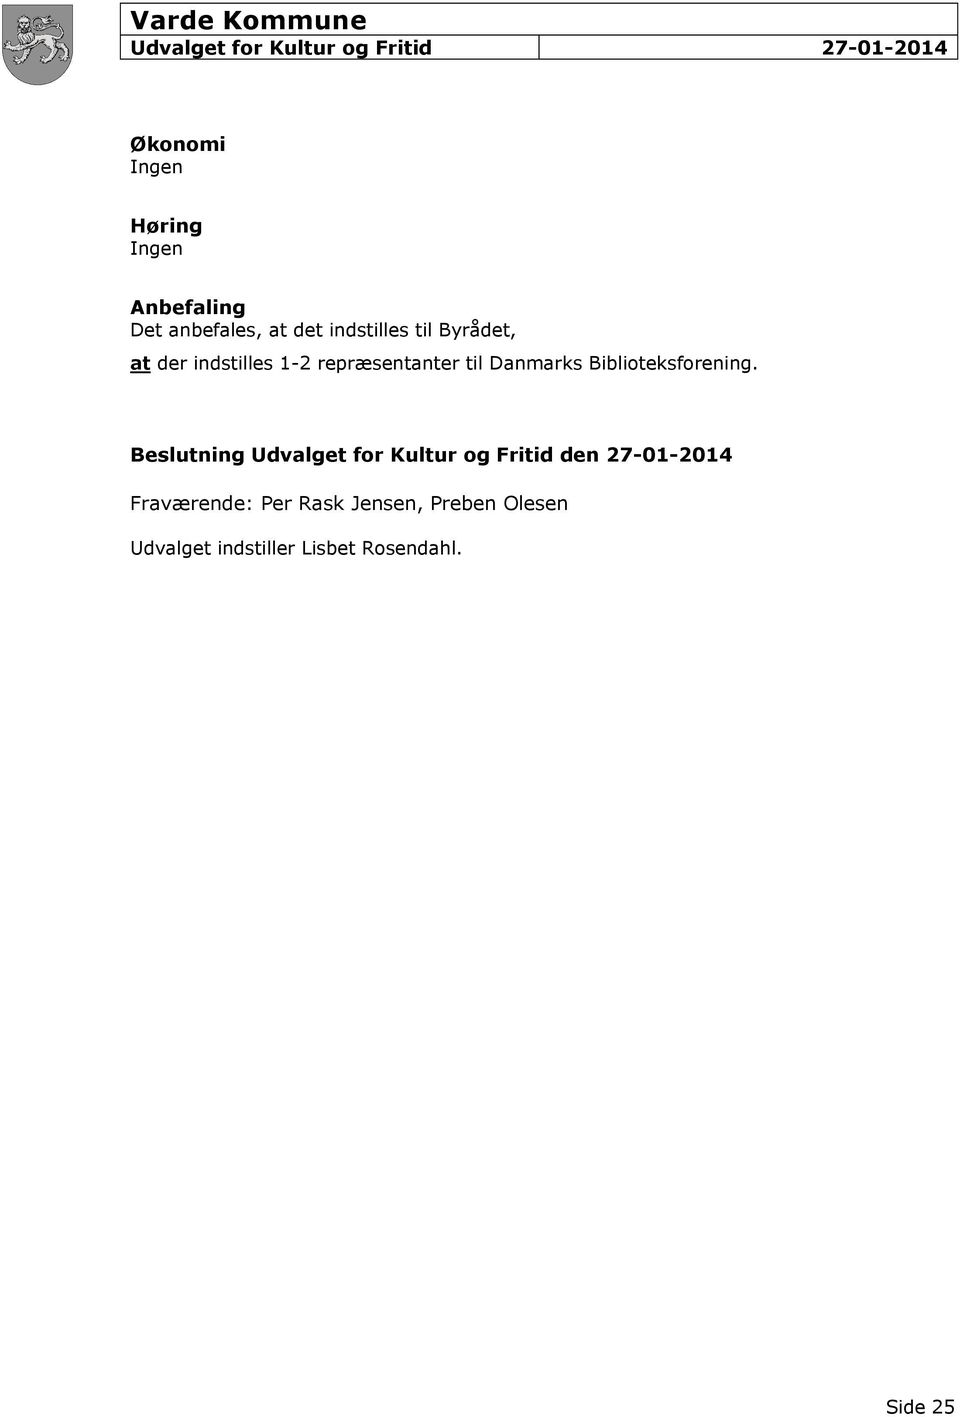 Beslutning Udvalget for Kultur og Fritid den 27-01-2014 Fraværende: Per